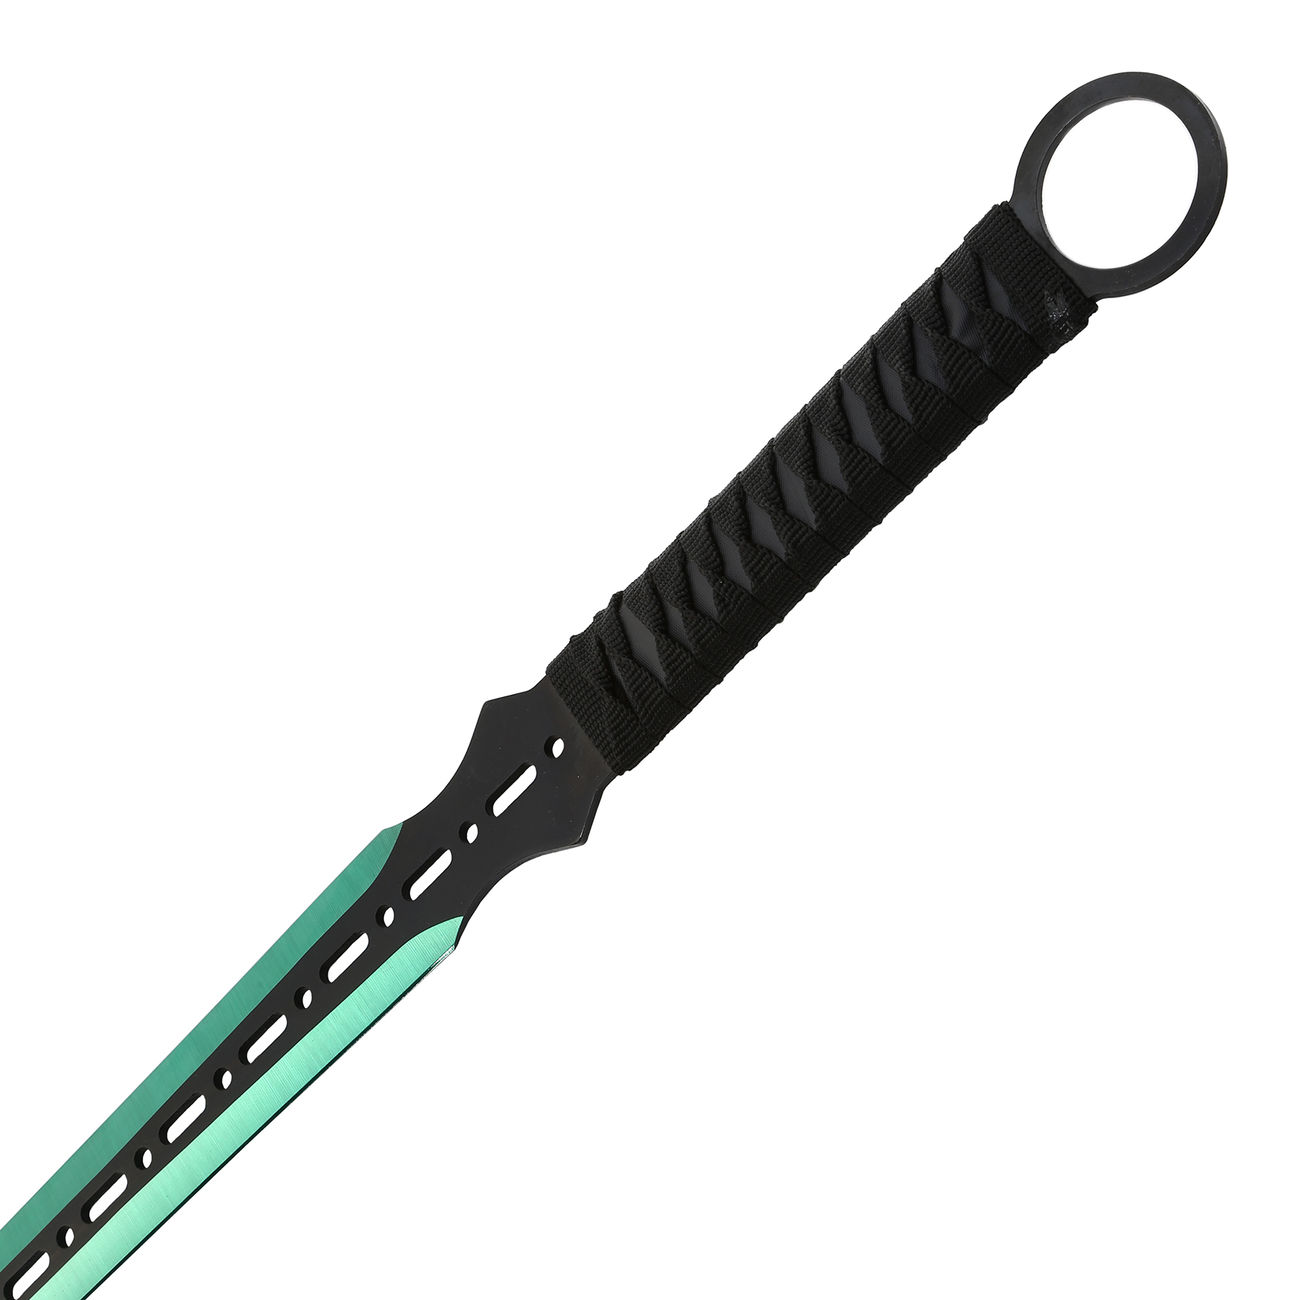 Heros Edge Ninja Schwert Set inkl. 2 Wurfmesser schwarz / grün Bild 1